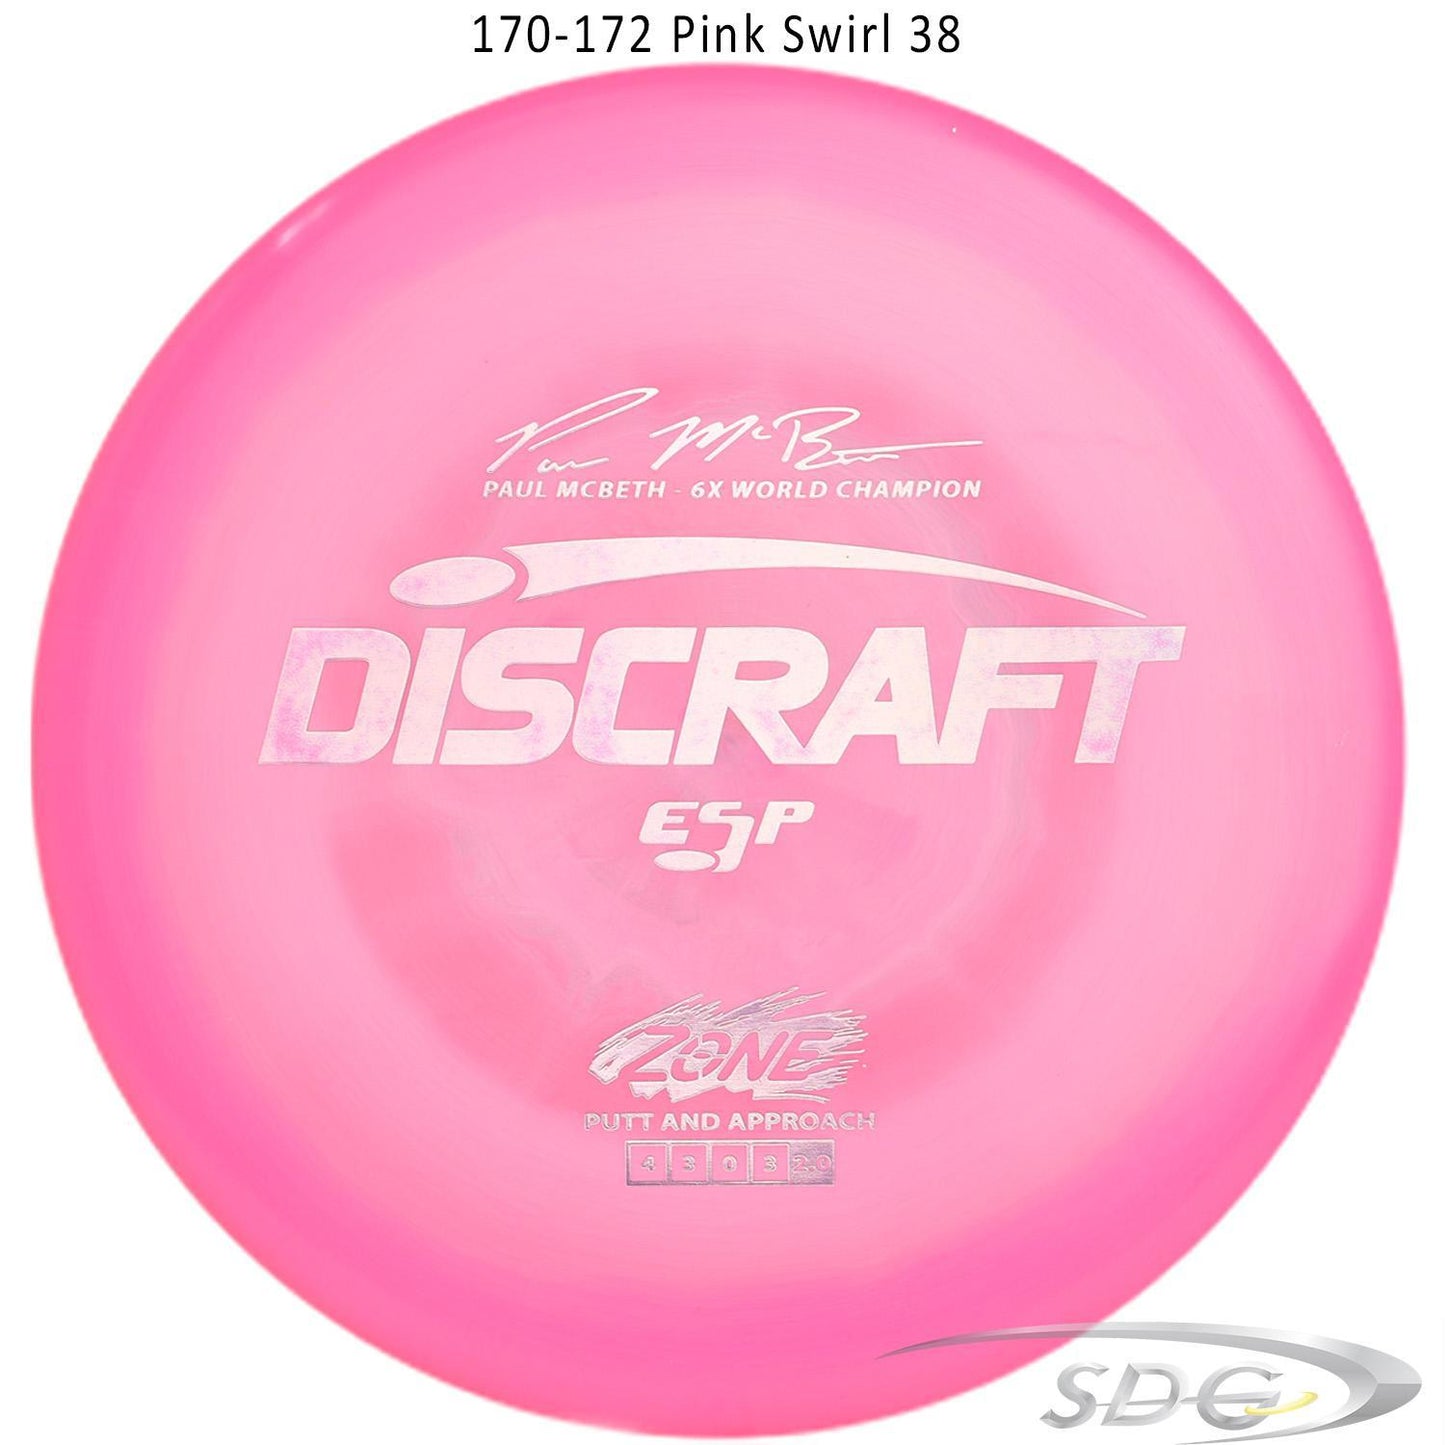 Discraft ESP Zone 6X Paul McBeth Signature Series Disc Golf Putter